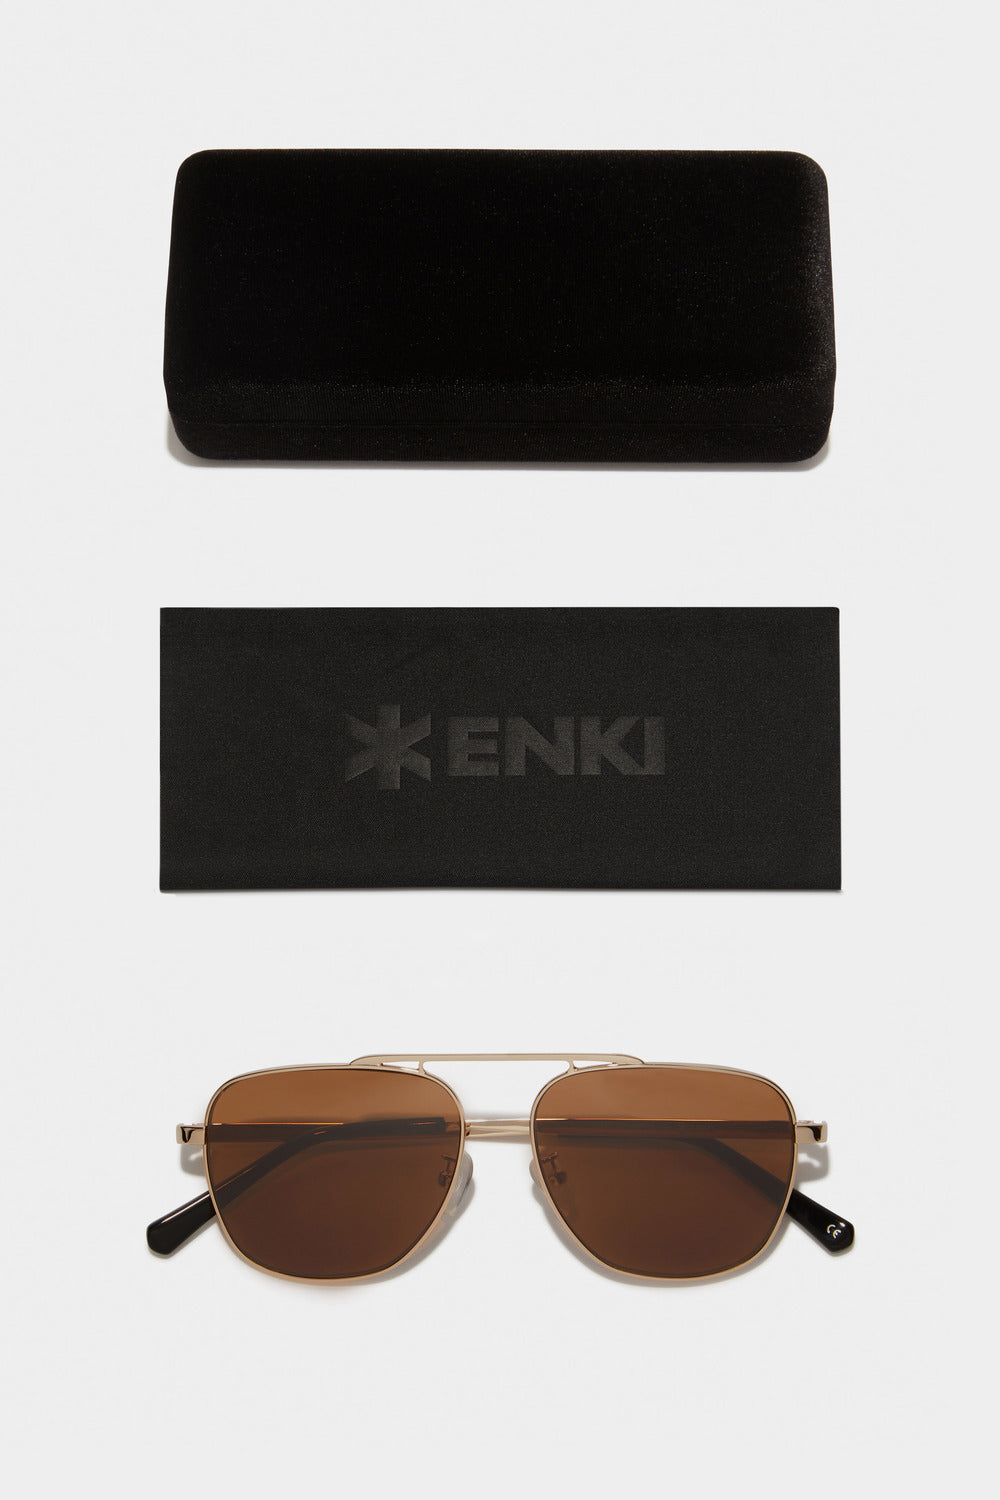 www.enkieyewear.com Teles Men’s and Women’s Sunglasses